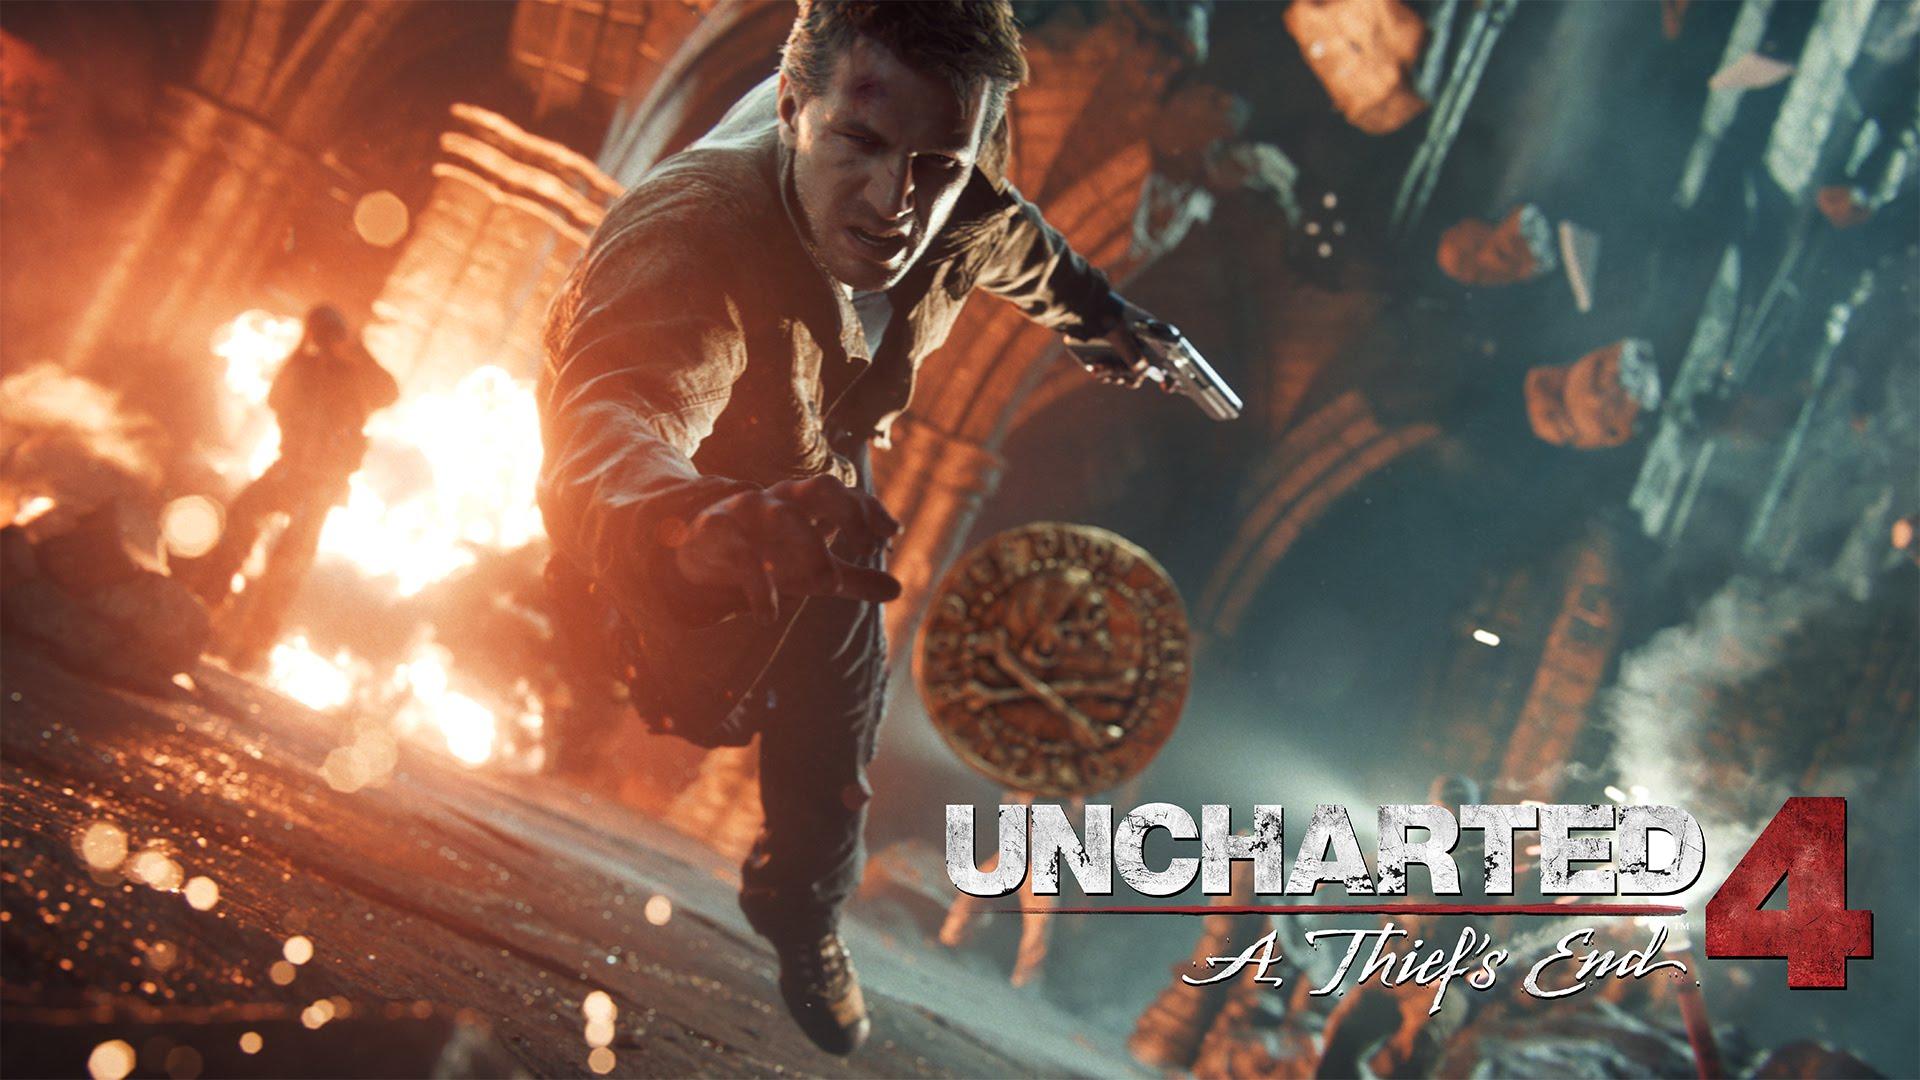 Uncharted 4: A Thief’s End trễ hẹn đến tháng 4/2016